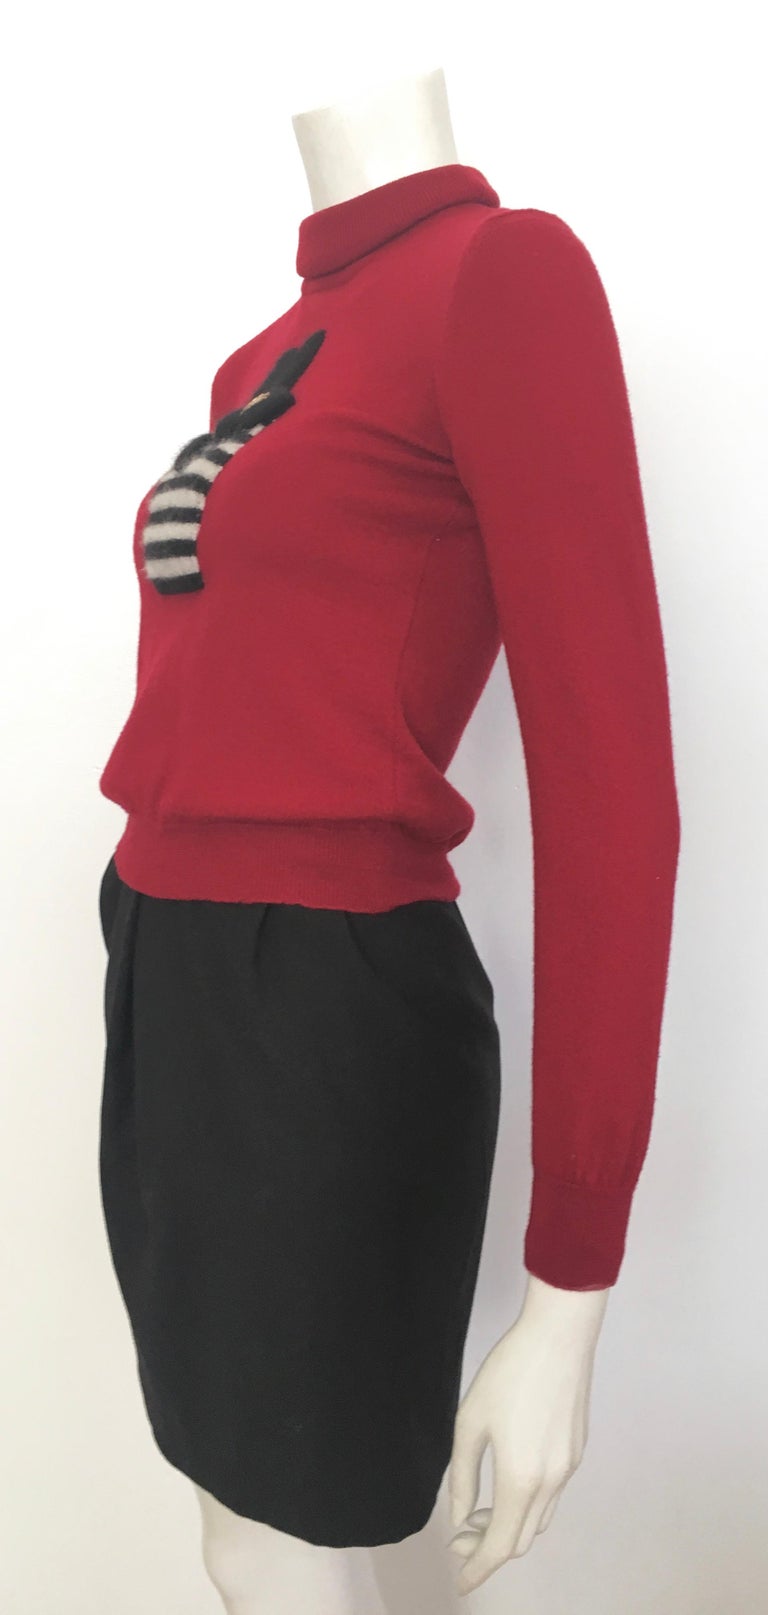 Gianfranco Ferre 1980s Black Short Skirt Size 0. For Sale at 1stDibs